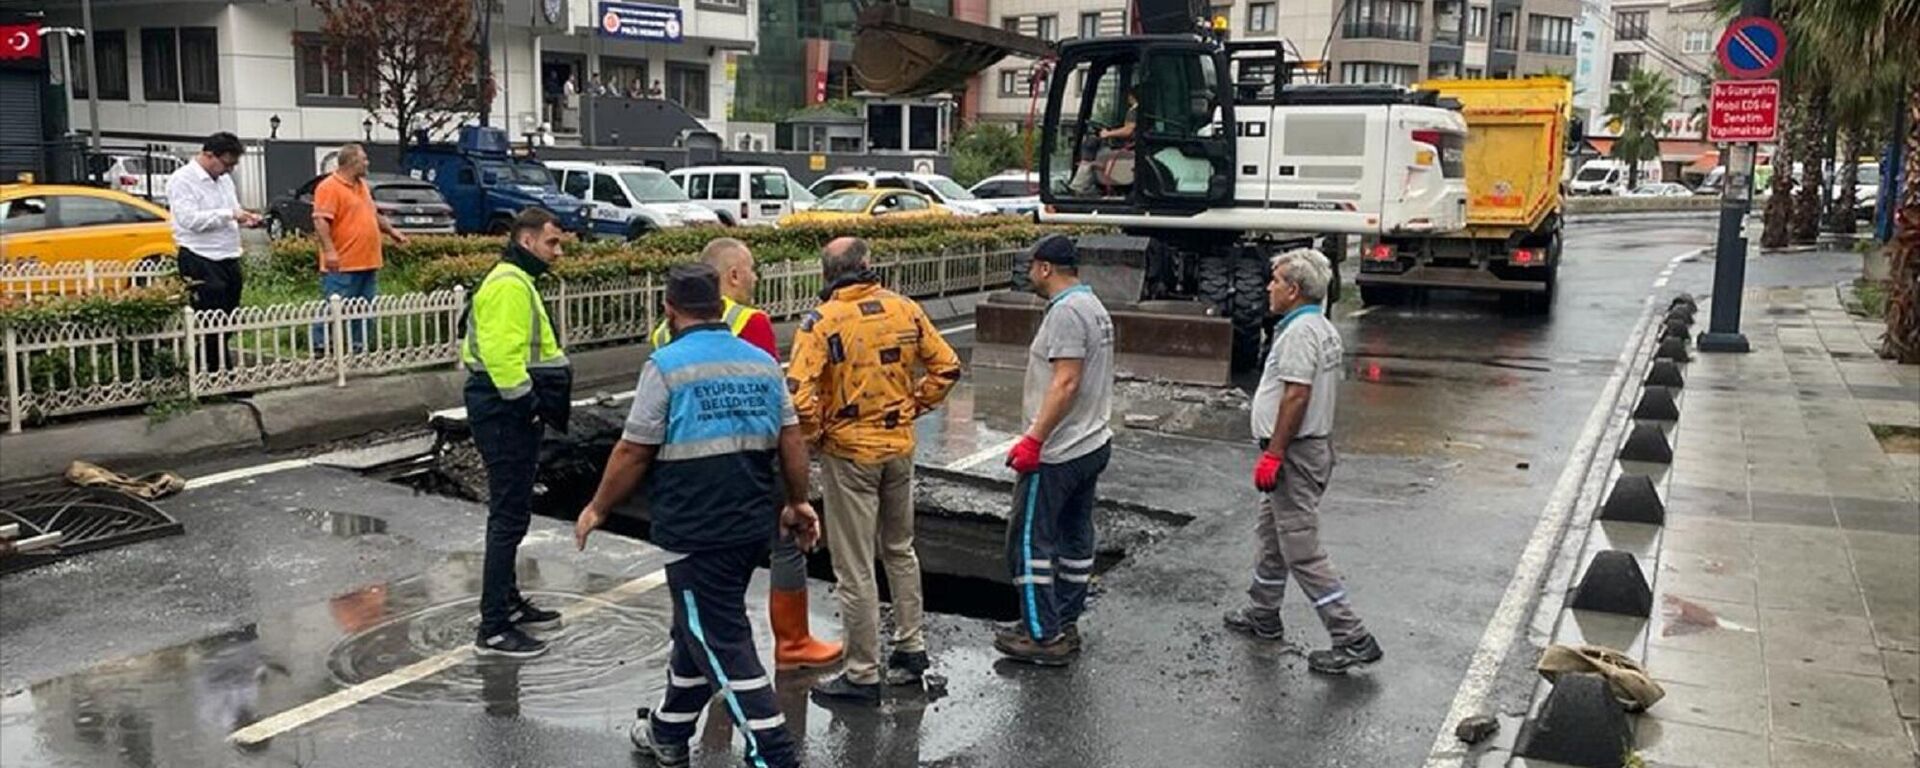 İstanbul'un Eyüpsultan ilçesinde etkili olan sağanak yaşamı olumsuz etkiledi. Alibeyköy Vardar Bulvarı'nda ilerleyen İETT otobüsünün geçişi sırasında sağanağın etkisiyle yolda çökme meydana geldi. Çökme nedeniyle otobüsün ön kısmındaki lastikler zemine gömüldü. Durumun bildirilmesi üzerine olay yerine gelen belediye ekipleri bölgede onarım çalışması başlatırken cadde trafiğe kapatıldı.
 - Sputnik Türkiye, 1920, 26.08.2022